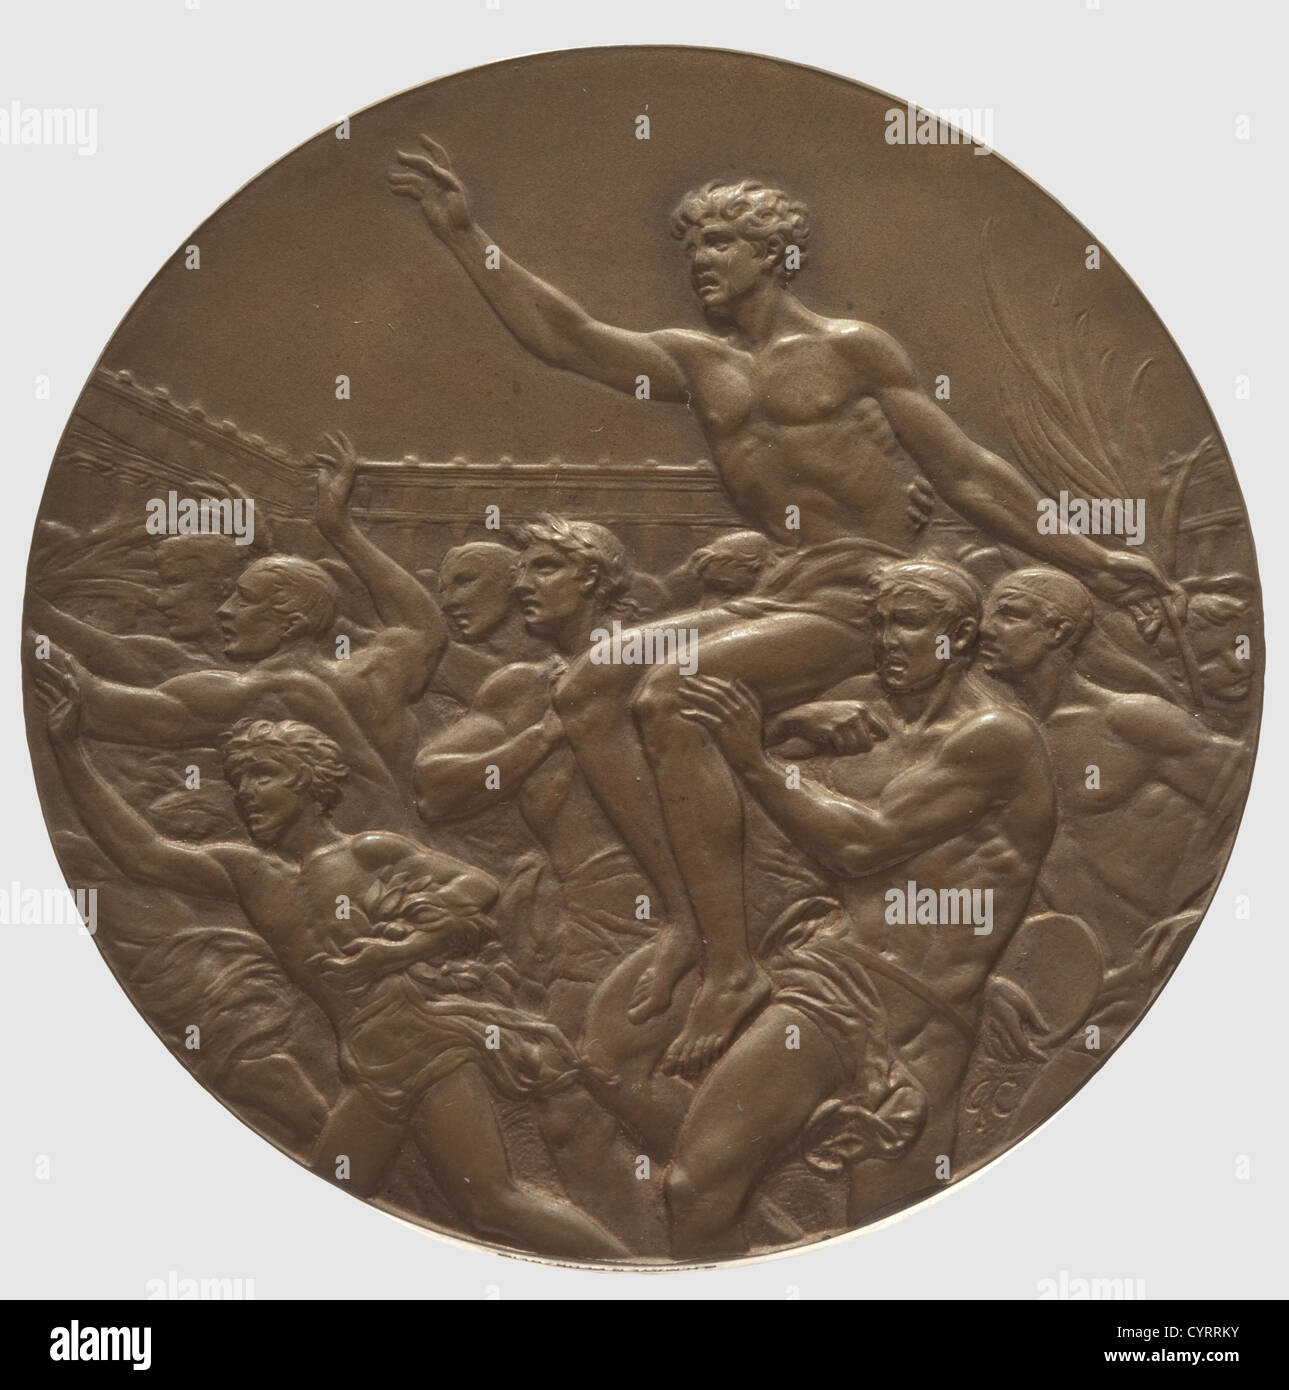 Käthe Krauss(1906 - 1970), une médaille de bronze en cas des Jeux Olympiques de 1936, télégrammes de félicitations et documents de récompense Médaille de bronze XI OLYMPIADE BERLIN 1936',diamètre 55 mm,poids 77.5 g,inverse signé 'GC' pour le graveur Giuseppe Cassioli,le bord inscrit 'B. M. MAYER PFORZHEIM', dans un étui marron avec garniture de méandre noire, estampée or, la couverture avec la cloche olympique et l'inscription en lettres 'ICH rufe die Jugend der Welt' (je fais appel aux jeunes du monde), le boîtier doublé de velours beige et de soie, légèrement fendu. Avec le représentant,grand format a,droits-supplémentaires-Clearences-non disponible Banque D'Images